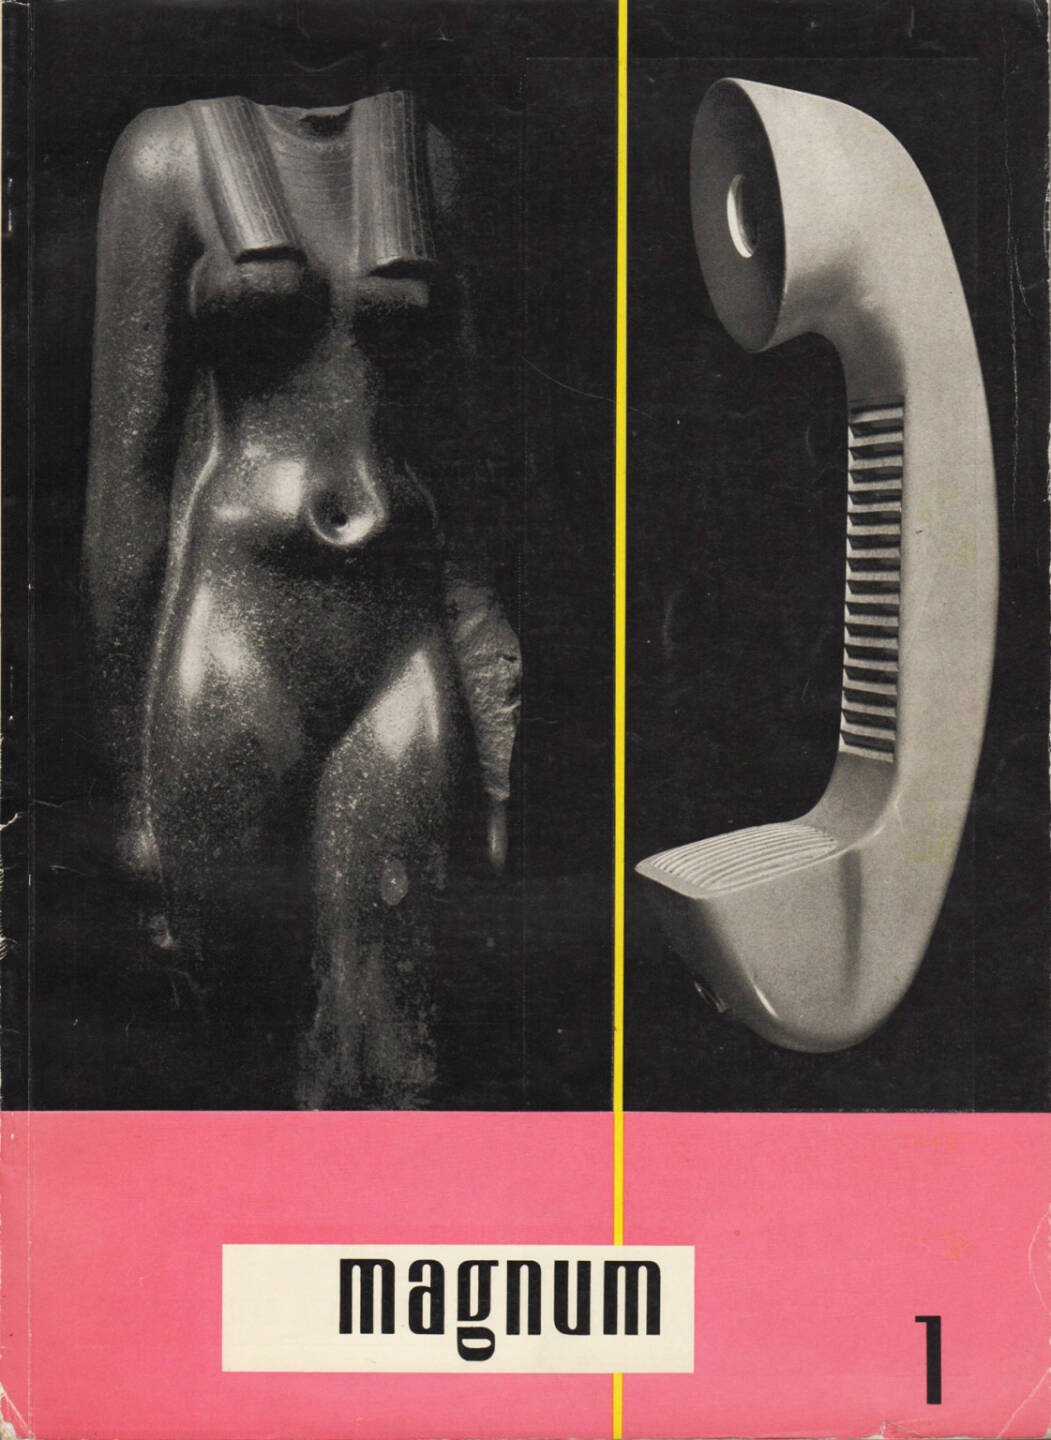 magnum – die Zeitschrift für das moderne Leben, Nummer 1, Zeitschriftenverlag Austria International 1954, Cover - http://josefchladek.com/book/magnum_die_zeitschrift_fur_das_moderne_leben_nummer_1_1954_-_wieso_modern